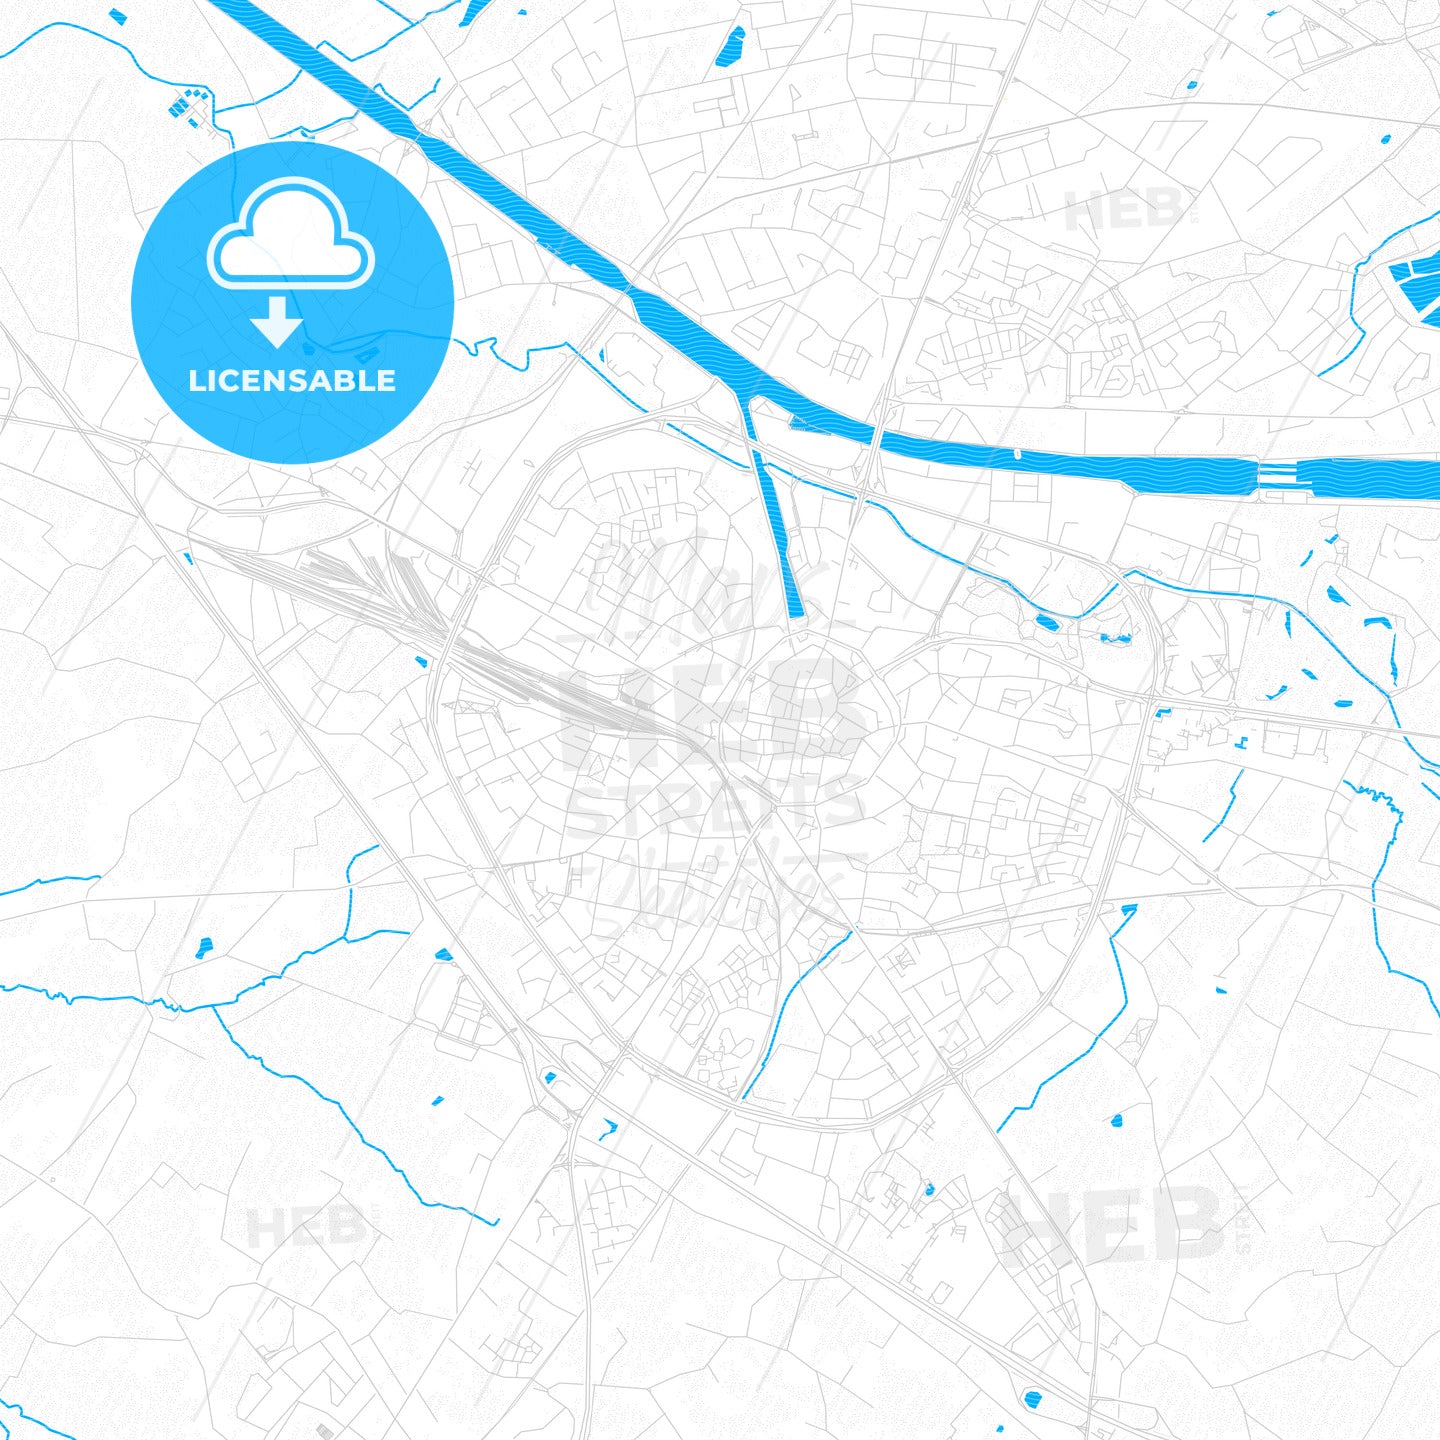 Hasselt, Belgium PDF vector map with water in focus